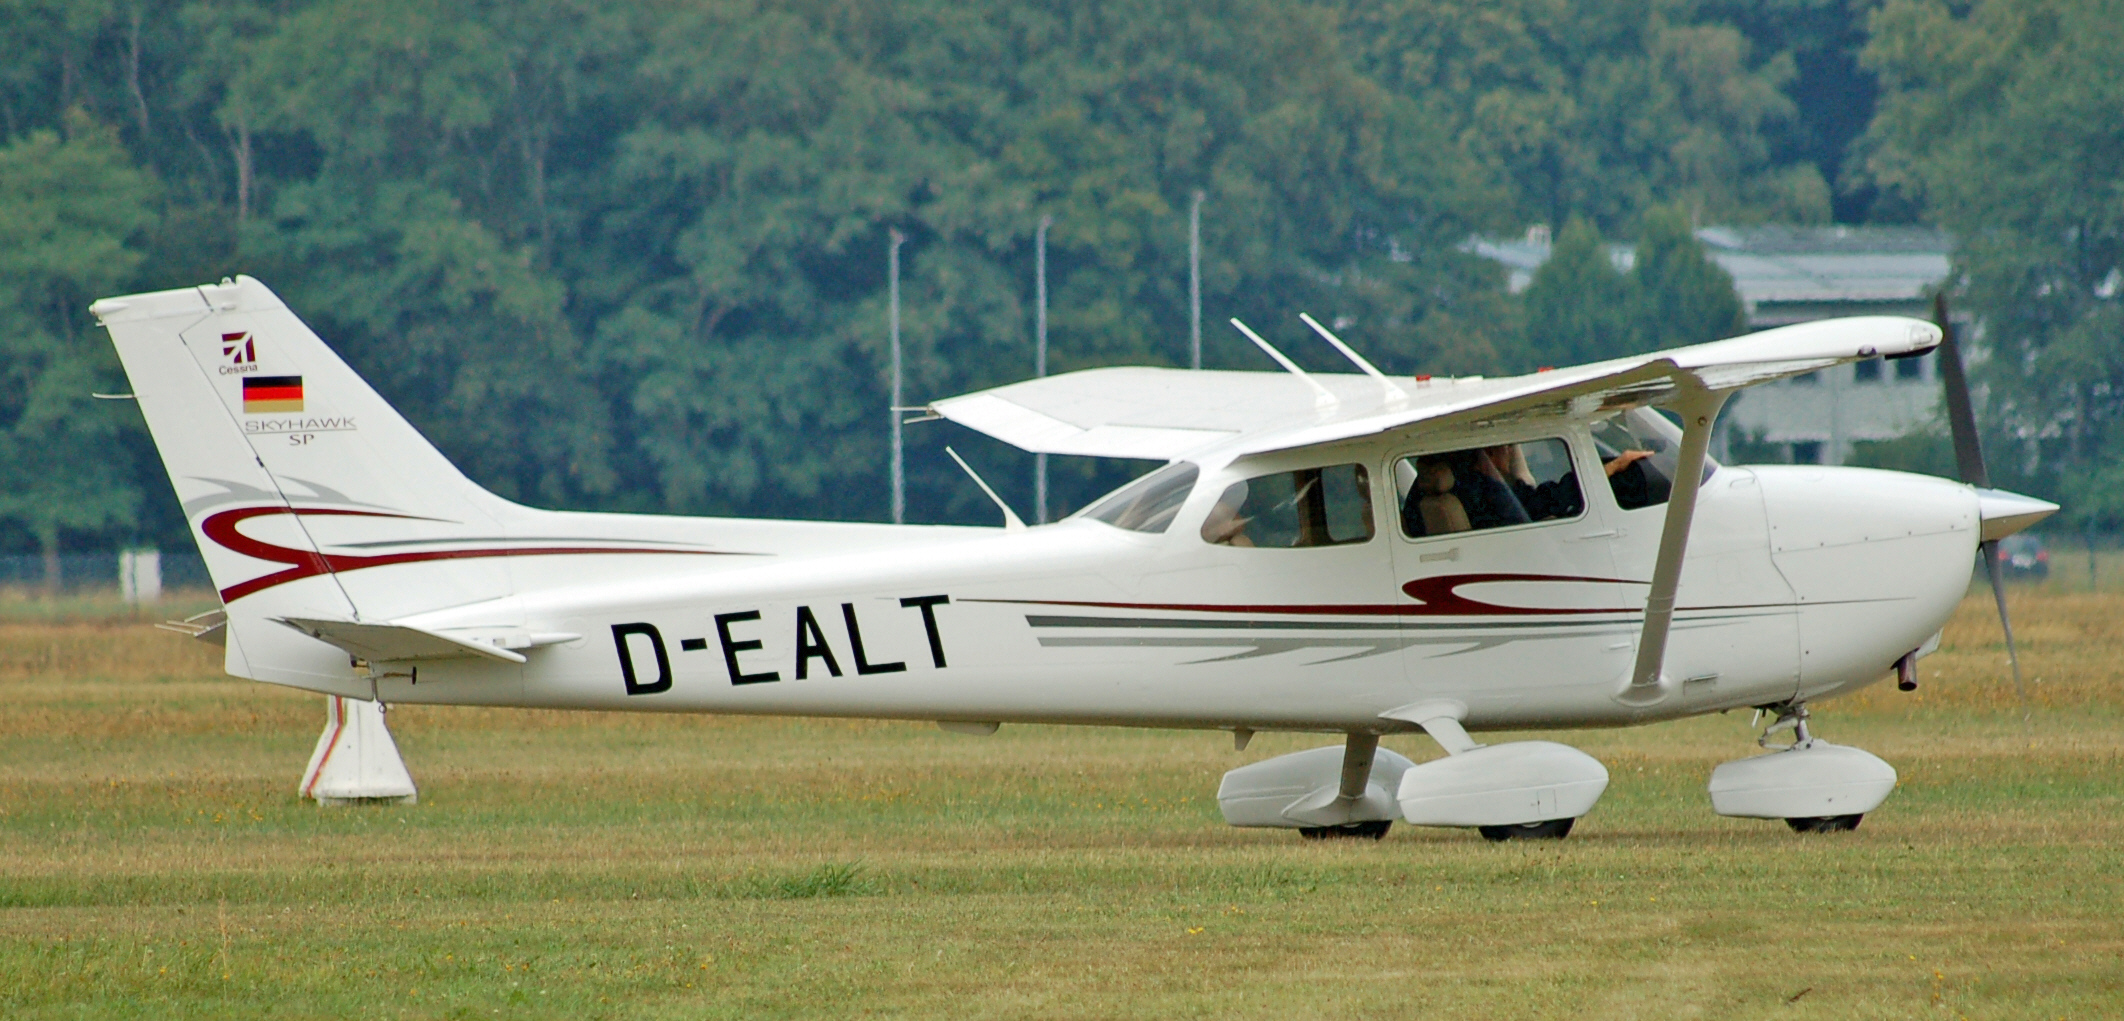 Cessna 172 Skyhawk (D-EALT) 02